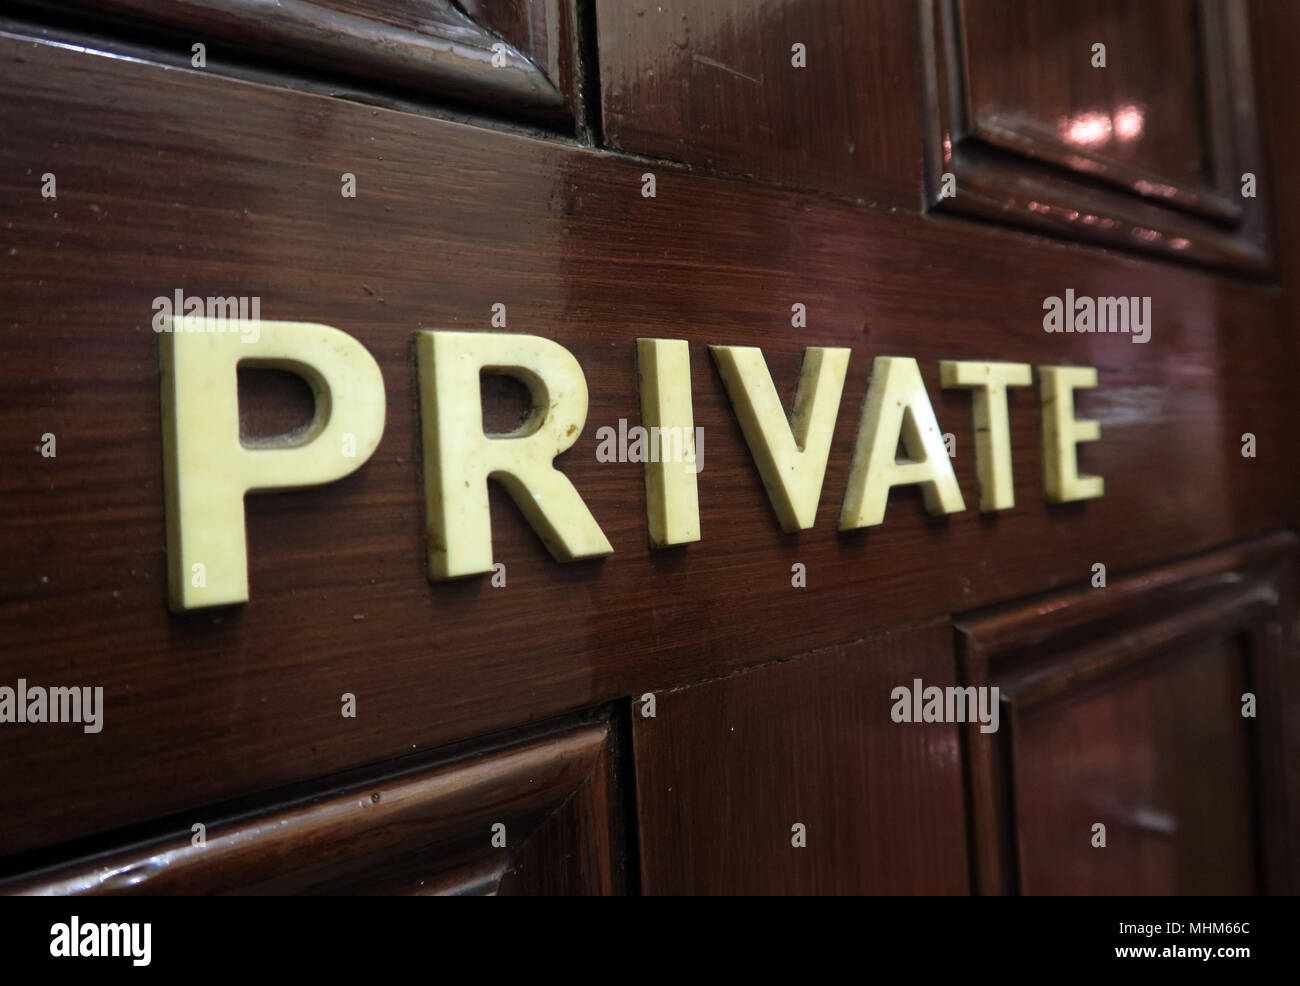 Privato in lettere, su una porta di legno marrone - mantenendo privati i dati personali e commerciali Foto Stock